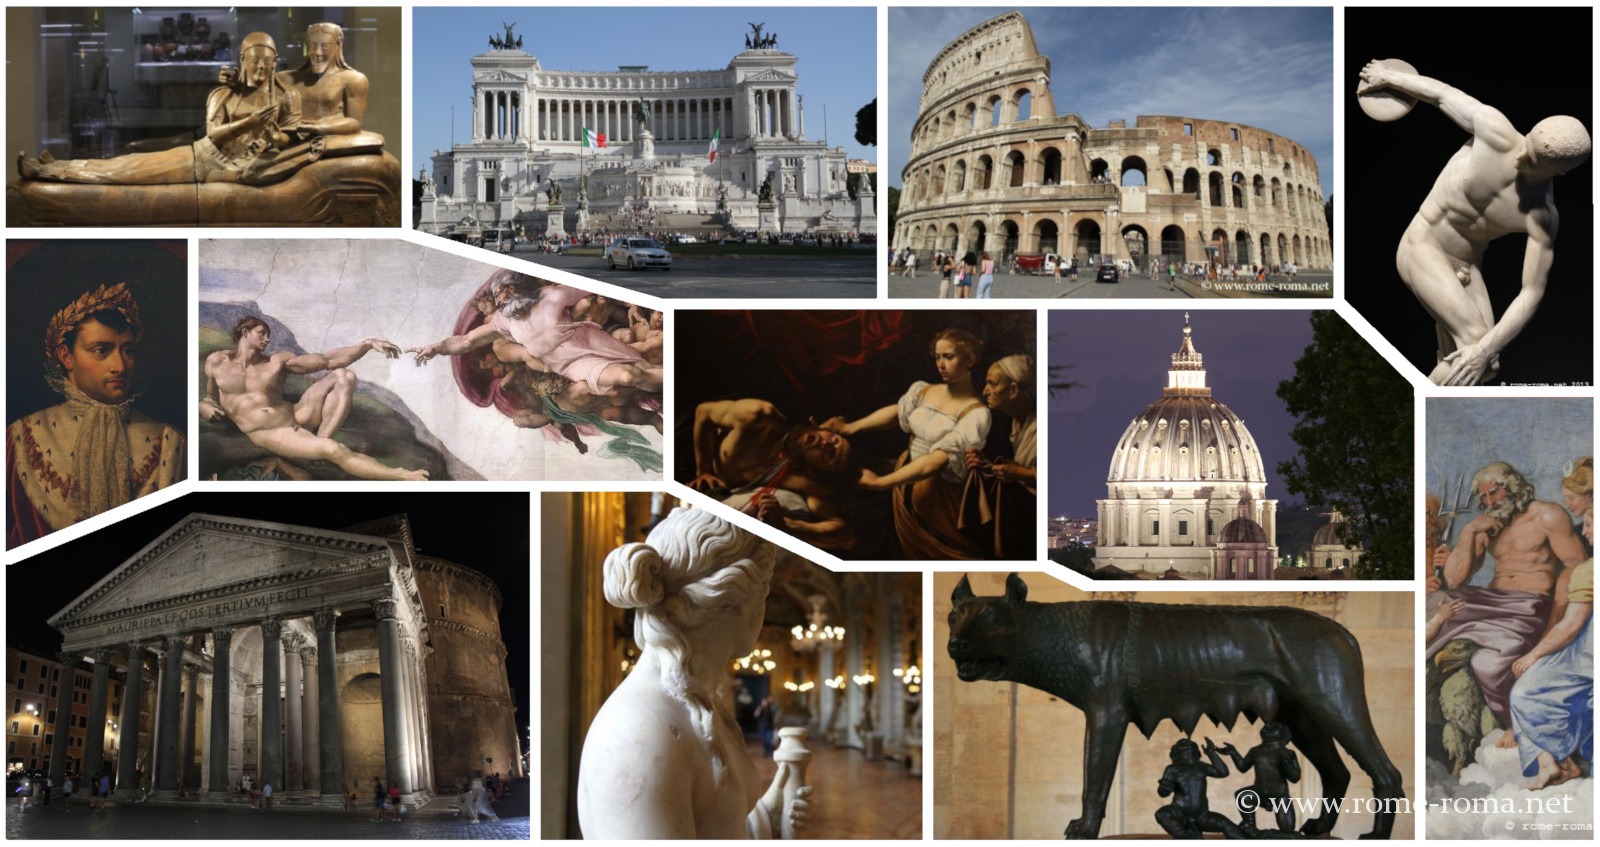 Entrée mensuelle libre aux musées de Rome